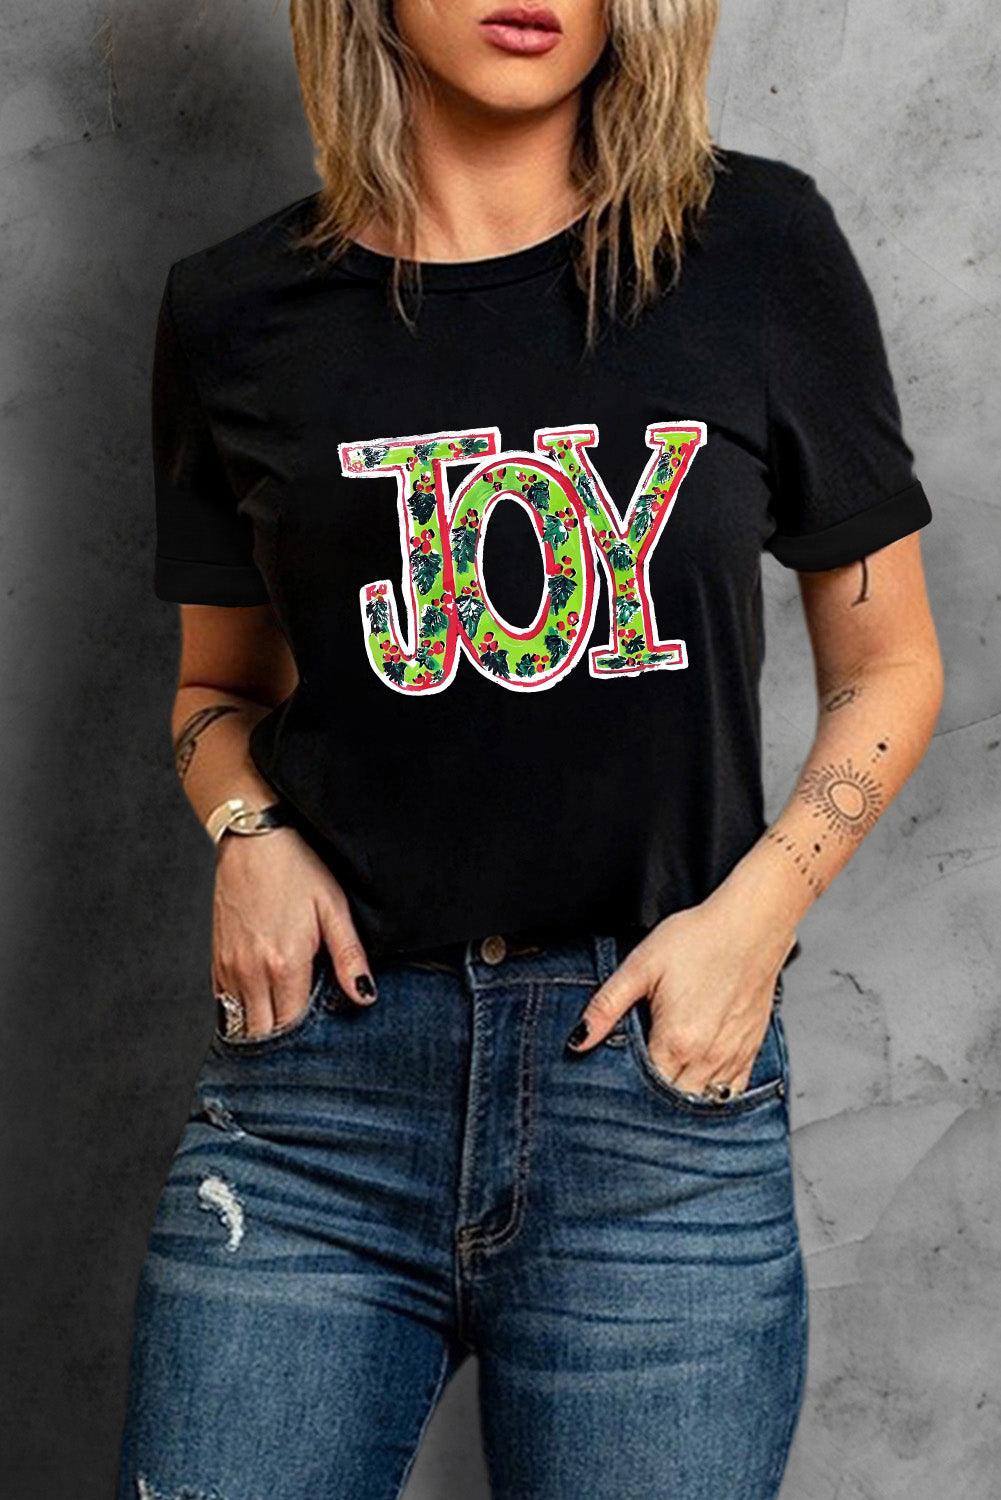 Black JOY Holly Printed Christmas Fashion Tee - L & M Kee, LLC